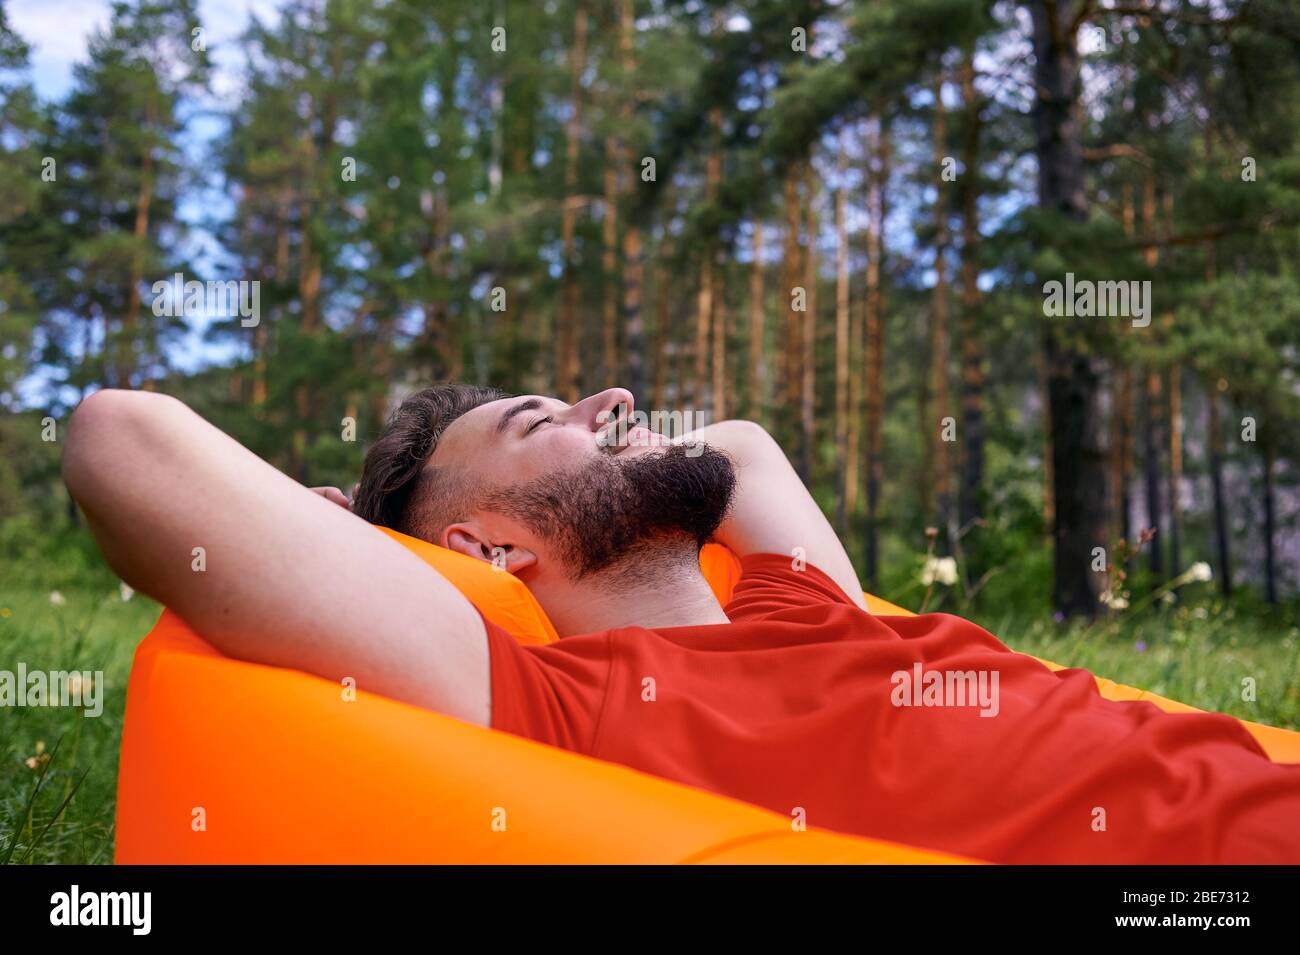 Das Leben genießen. Ein junger Mann liegt in einem Biwak im Wald., Entspannung, Urlaub, Lifestyle-Konzept Stockfoto